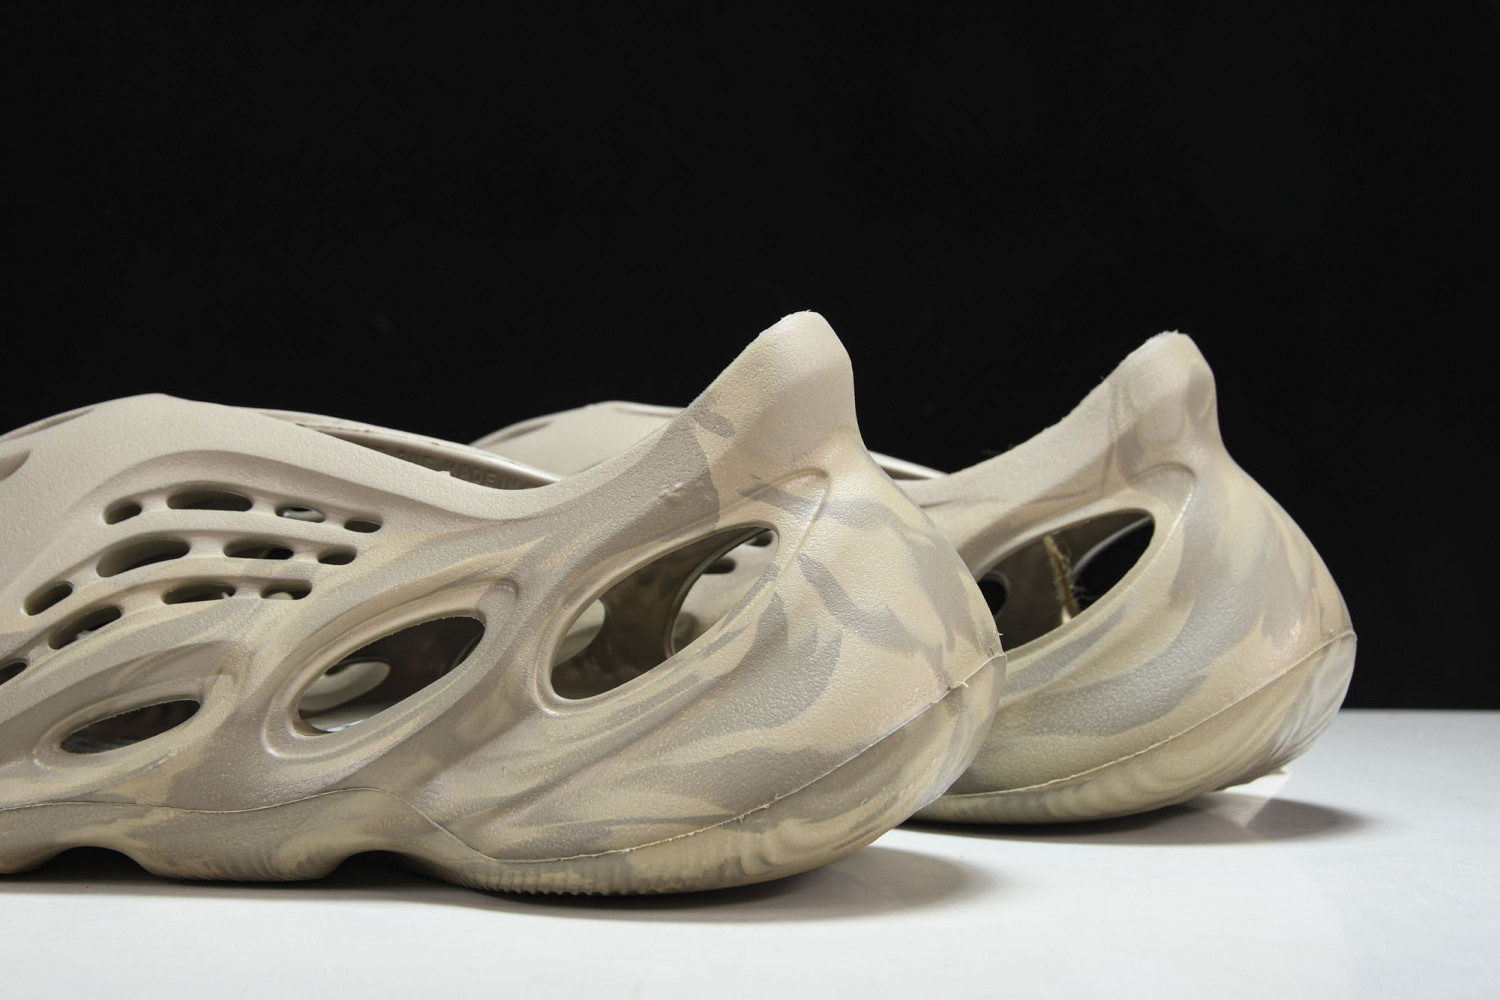 US$ 38.72 - adidas Yeezy Foam RNNR Stone Sage - www.fashionreps.vip